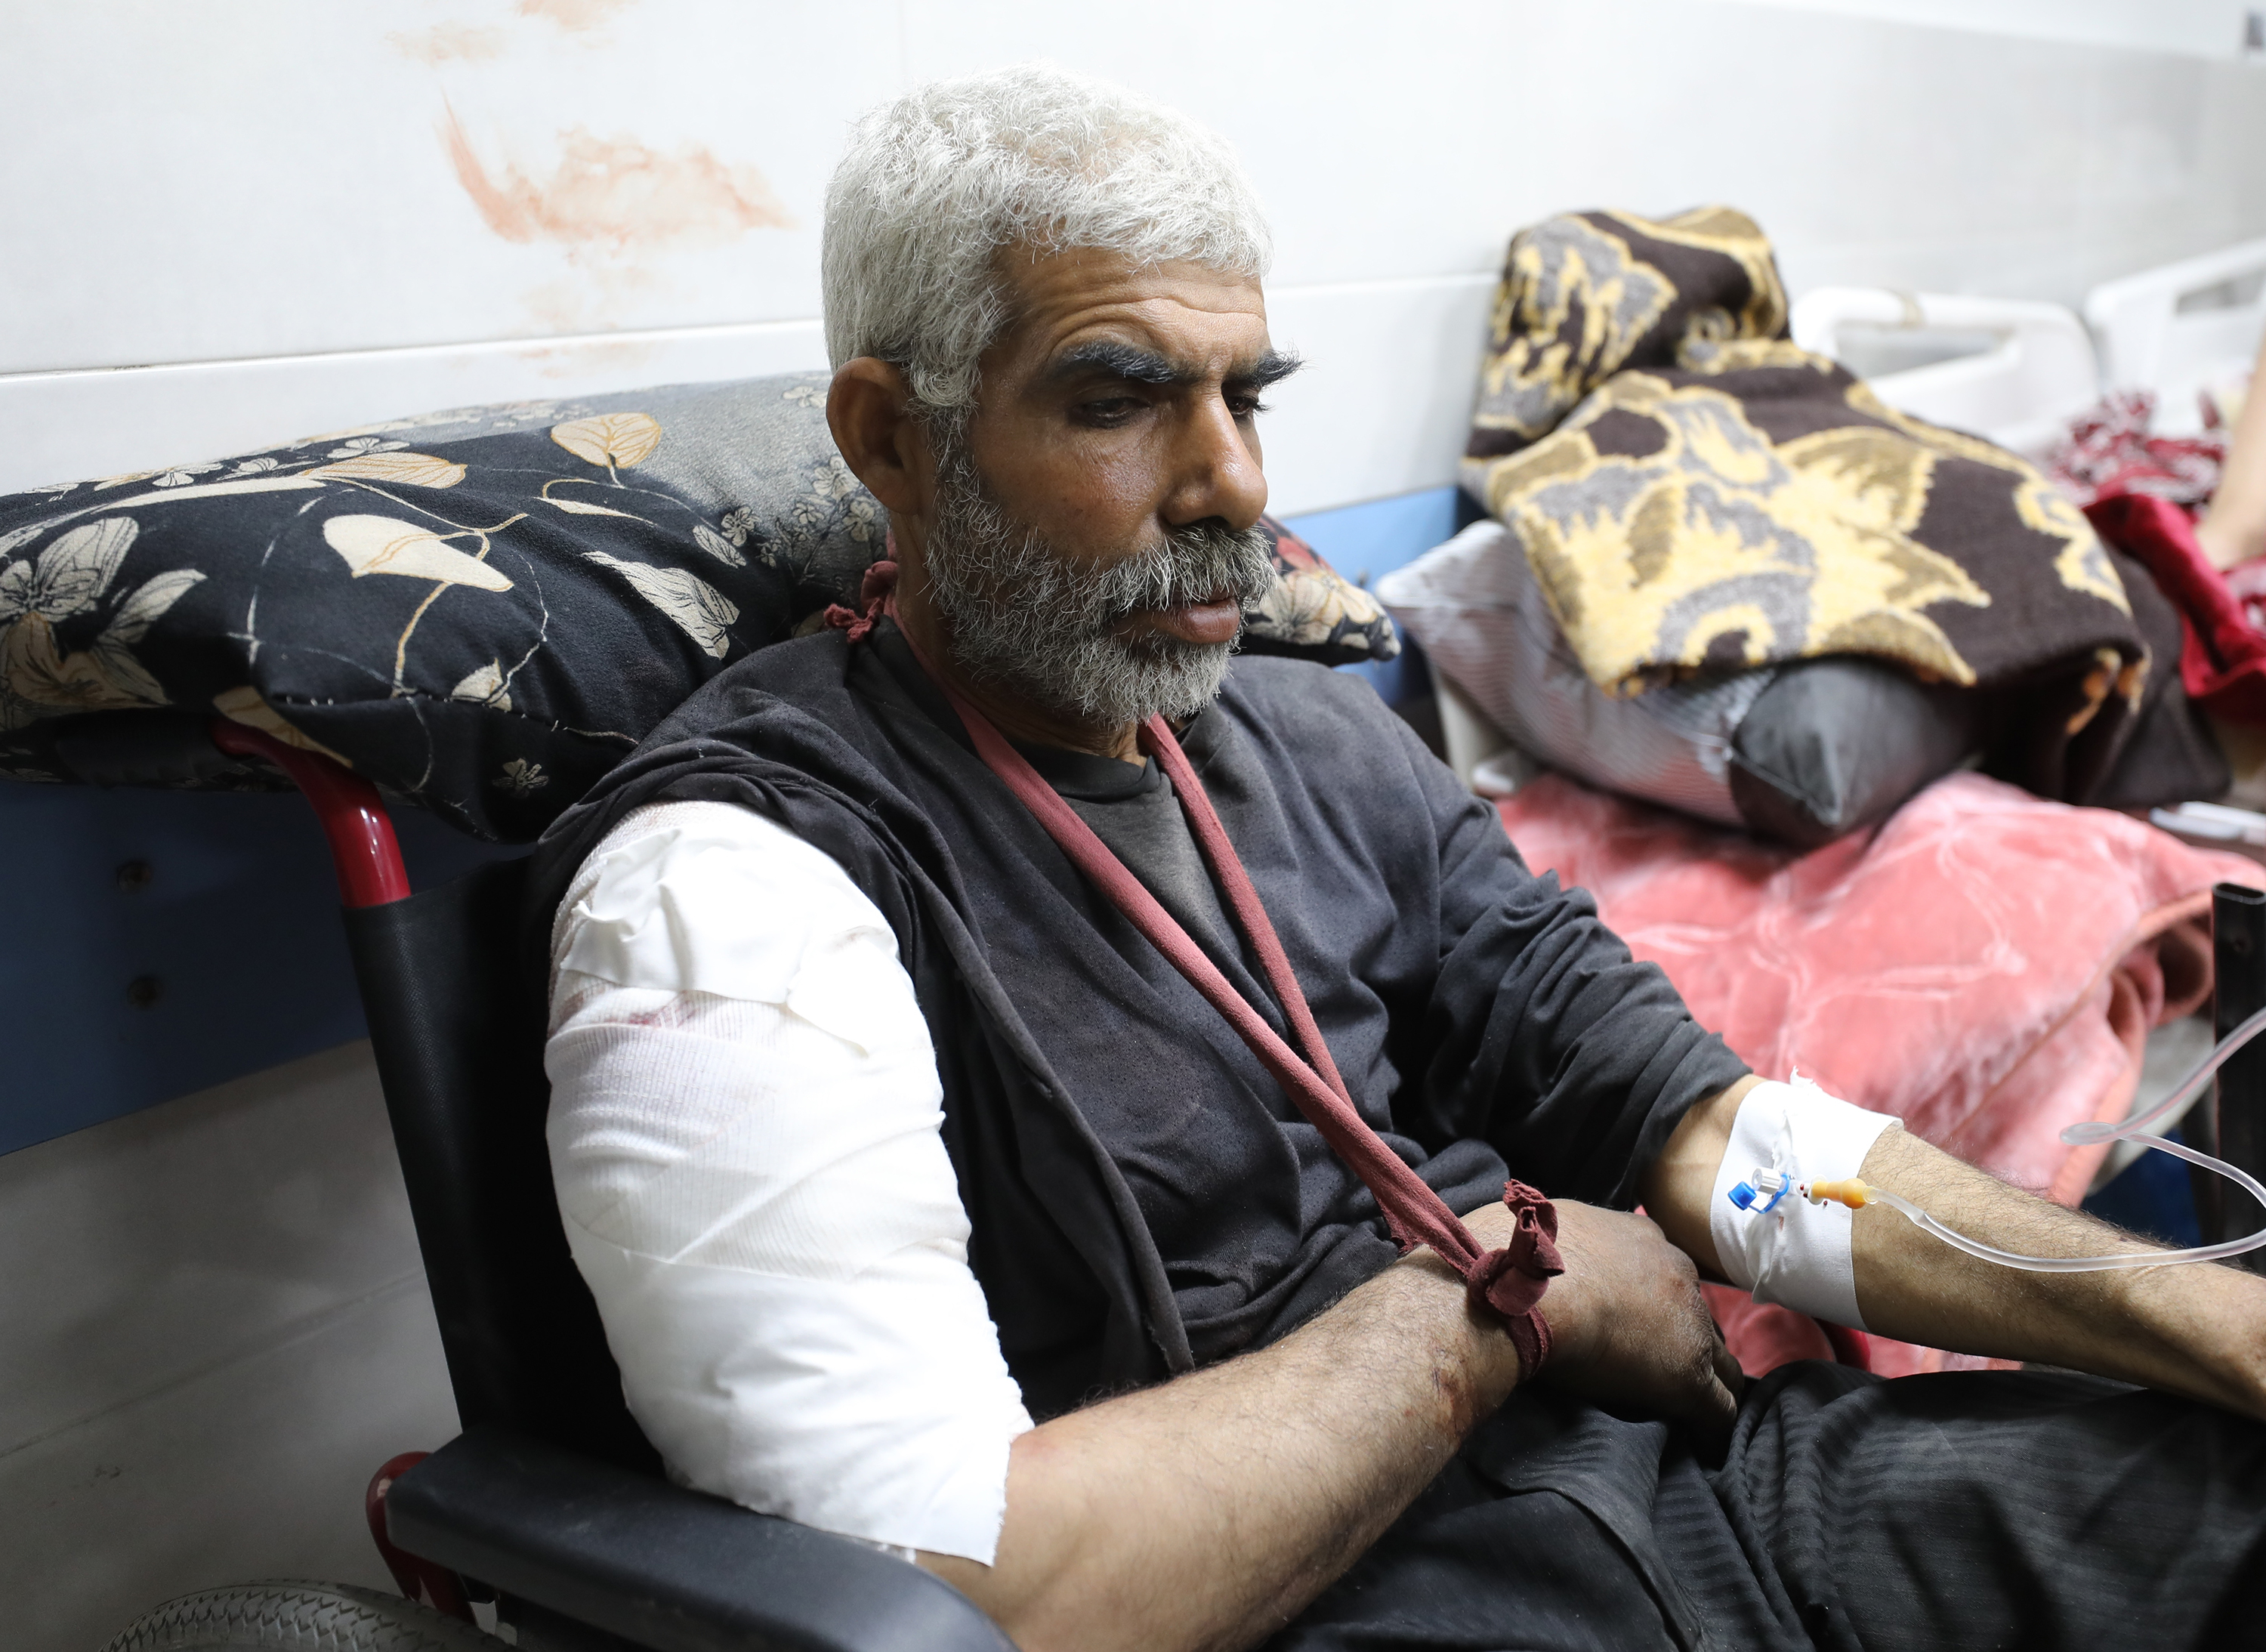 Un palestinese ferito riceve cure mediche all’ospedale Al-Shifa dopo che le forze israeliane hanno aperto il fuoco sui palestinesi in attesa di camion di aiuti umanitari in Al-Rashid Street a Gaza City, Gaza, il 29 febbraio.